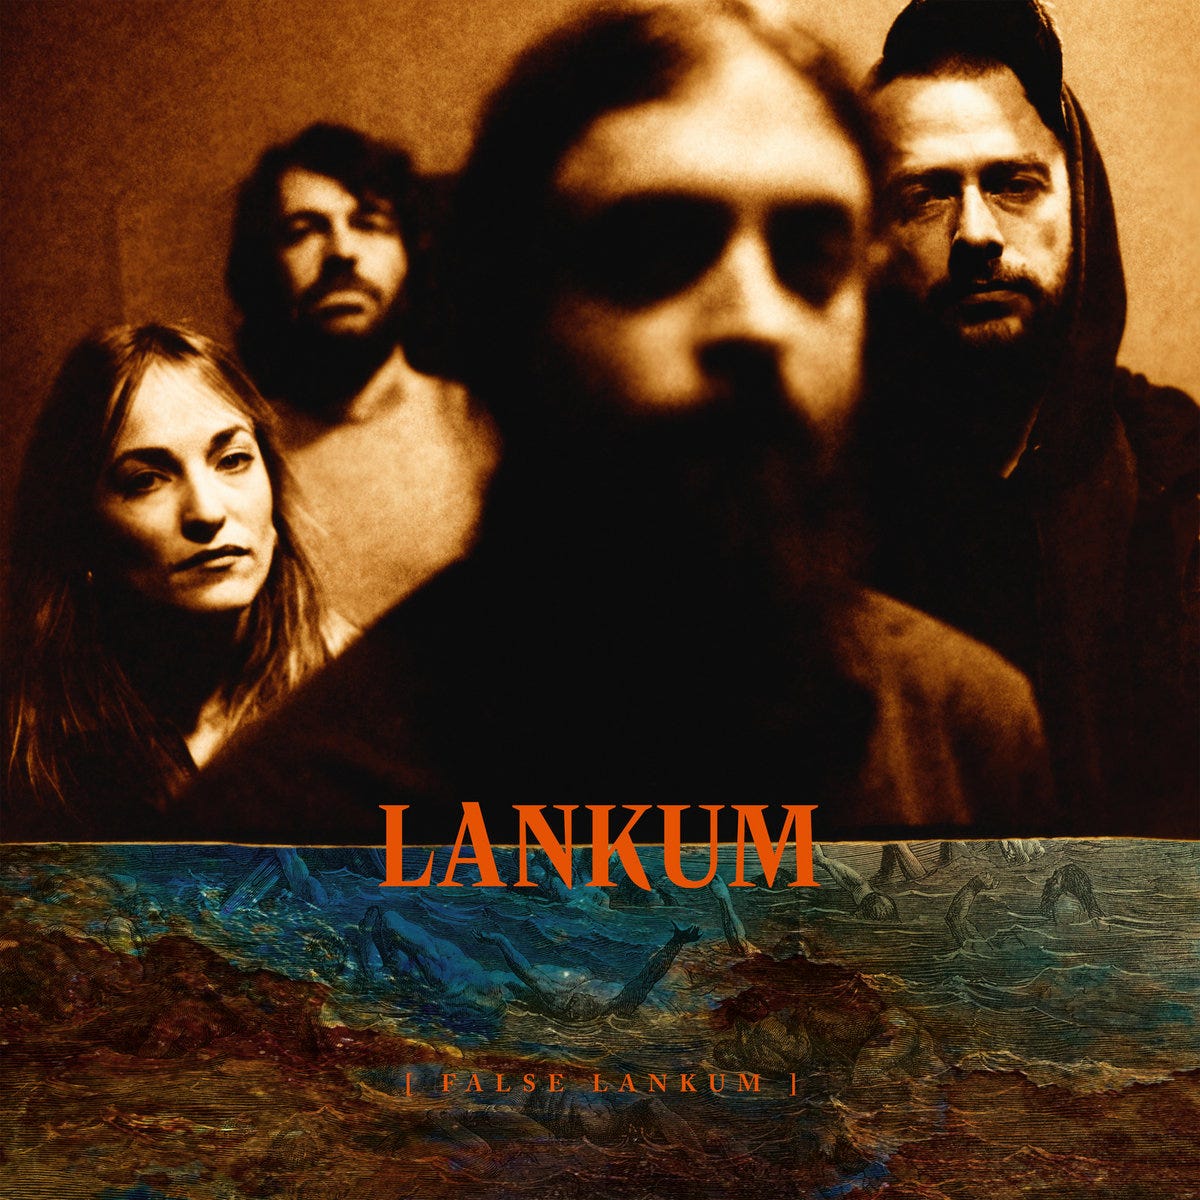 False Lankum by Lankum